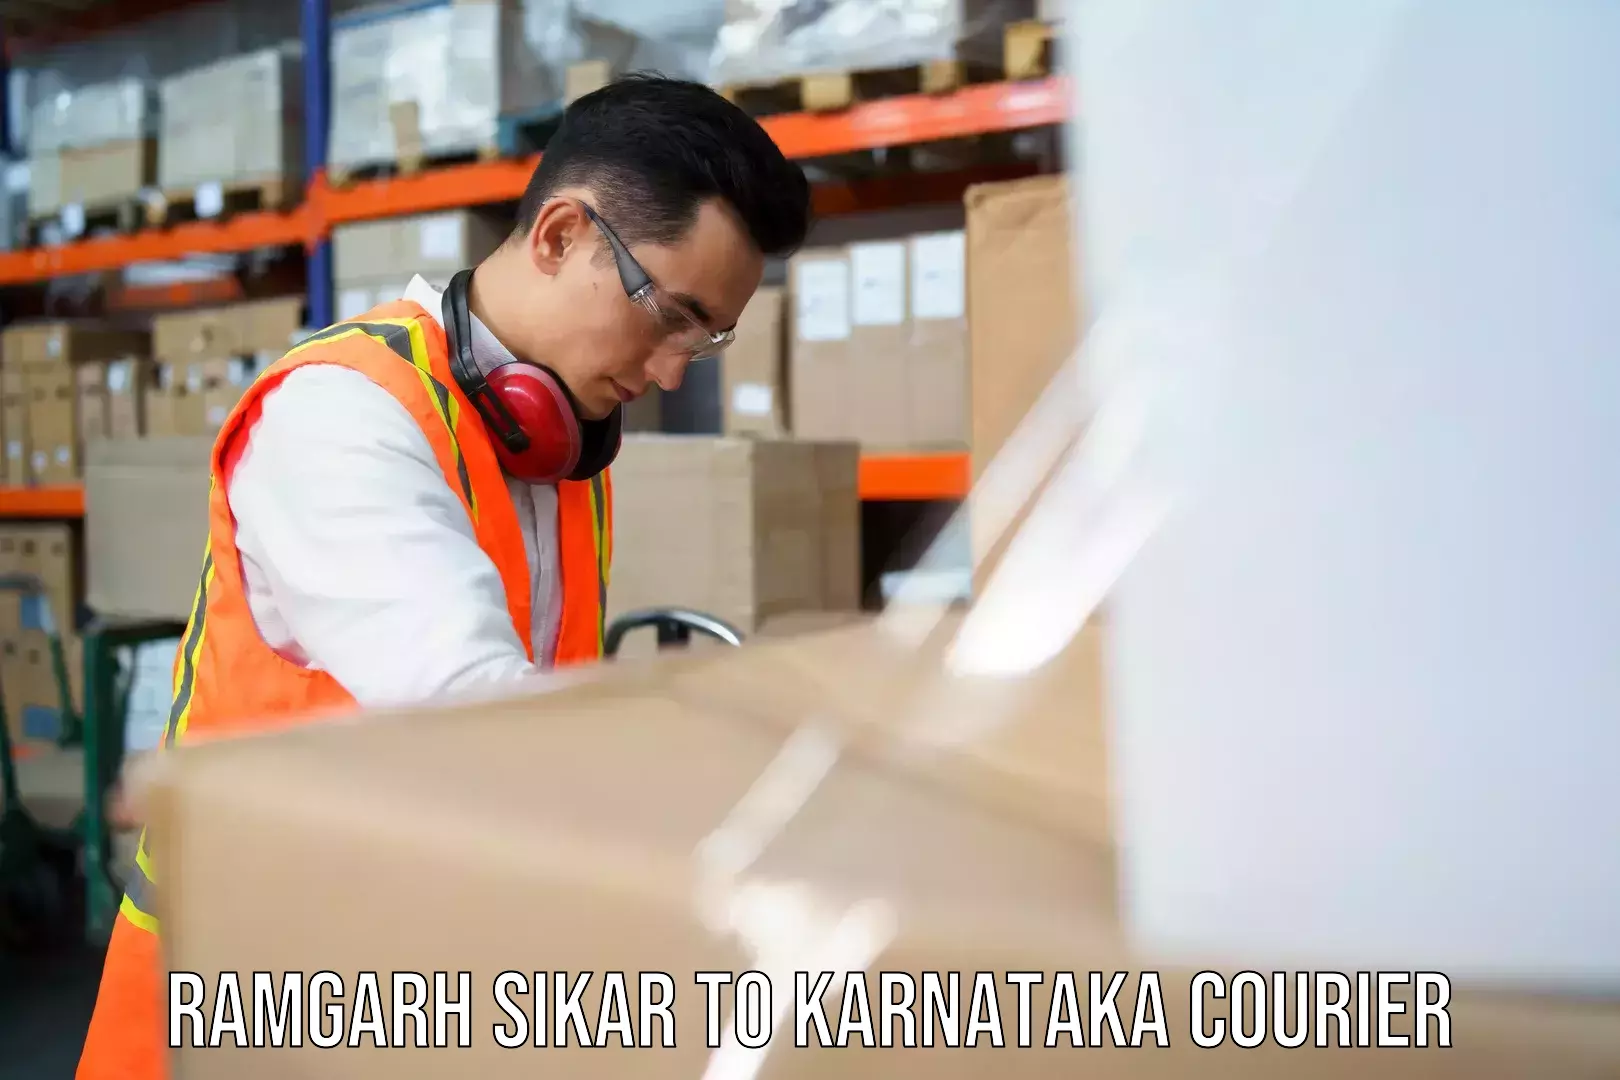 Global shipping solutions Ramgarh Sikar to Yelburga